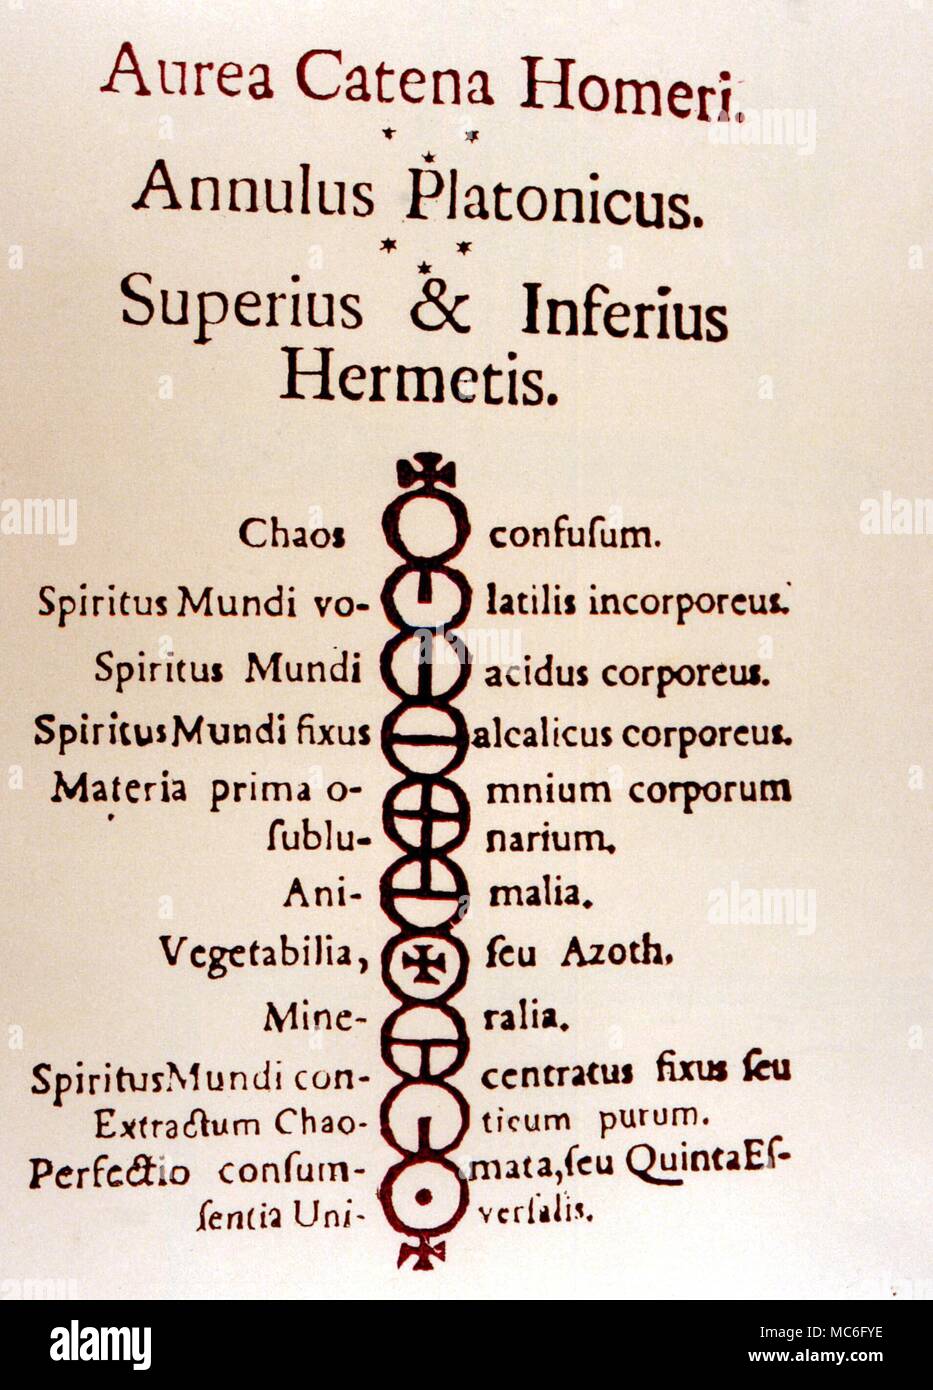 Die 10 magischen Siegel der großen Kette der Wesen, die vom Himmel auf die Erde erstreckt. Nach der 18. Ausgabe des "Aurea Catena Homeri'. Stockfoto